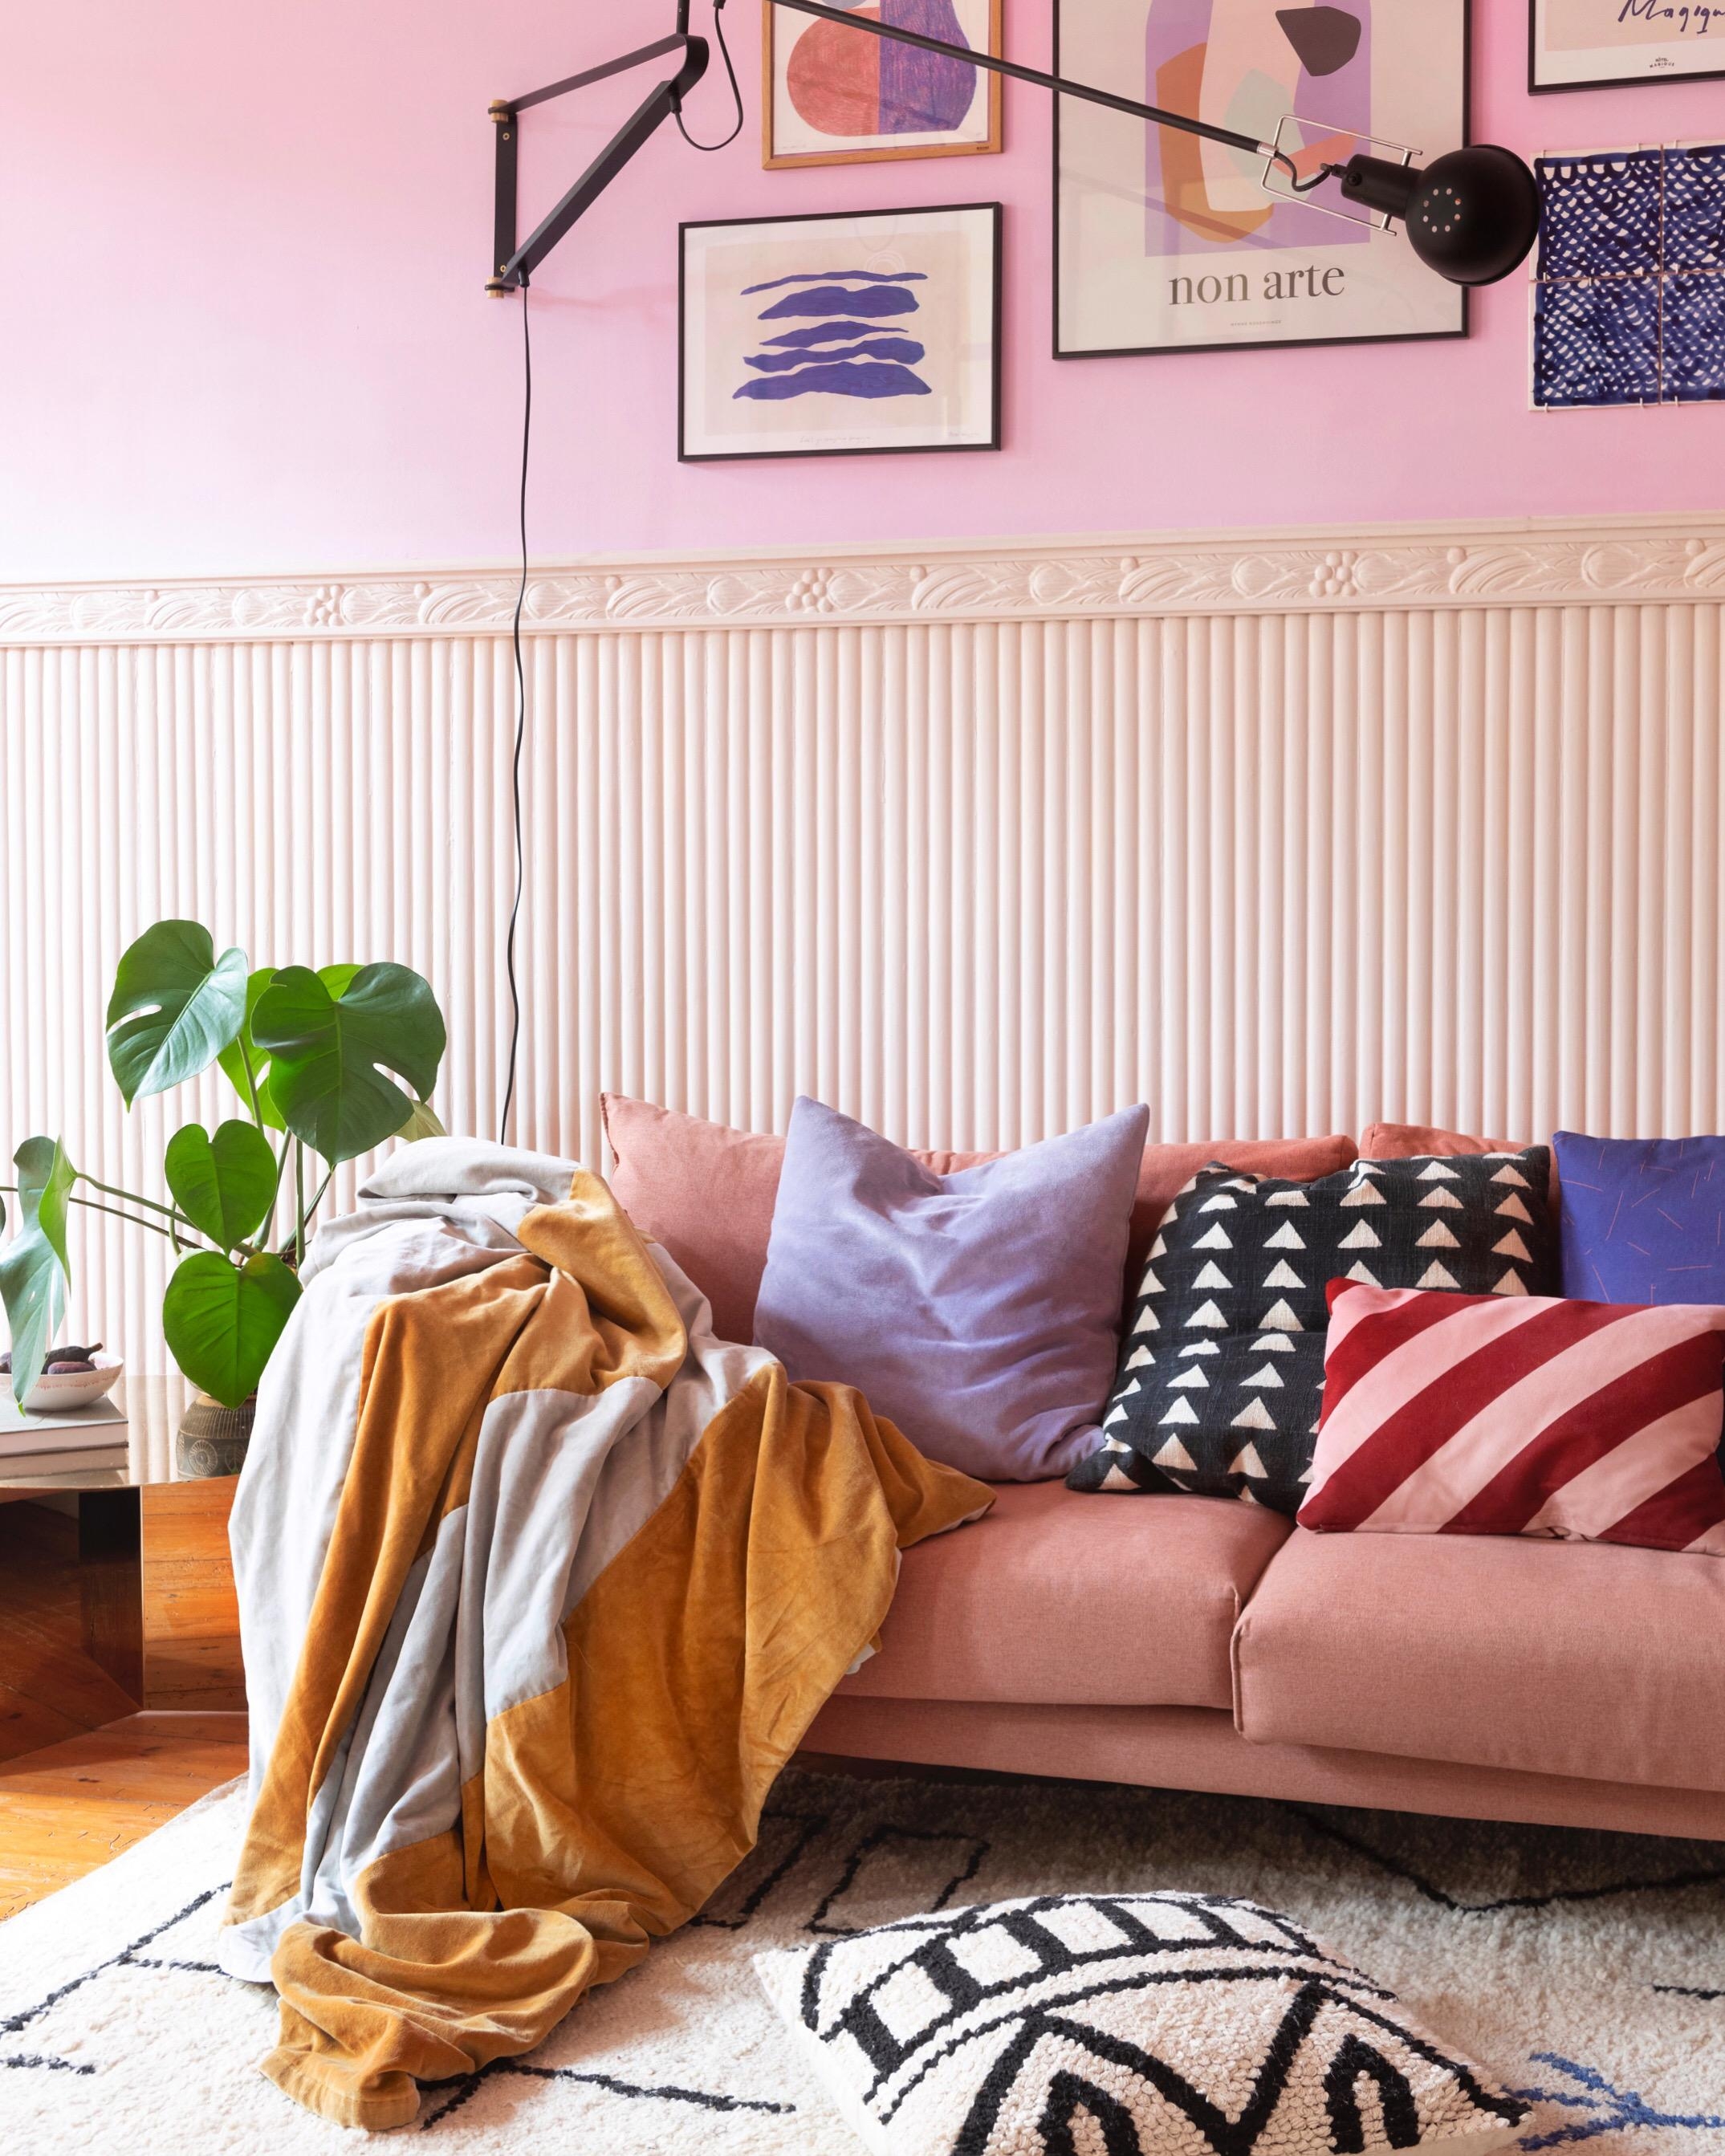 Sofazeit 💜
#sofa
#wohnzimmer
#colorful